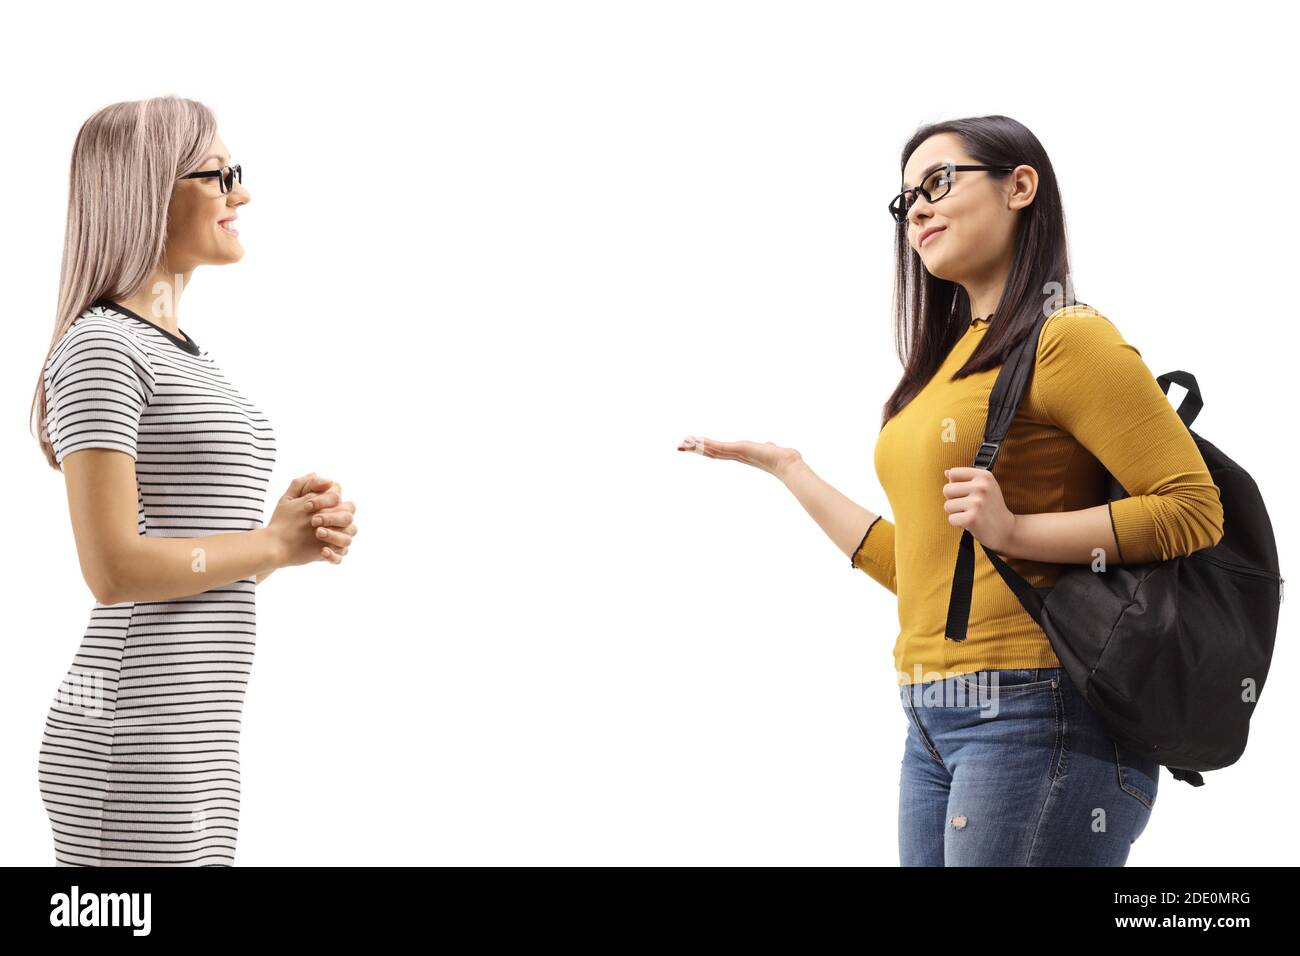 Junge Frauen mit einem Gespräch isoliert auf weißem Hintergrund Stockfoto